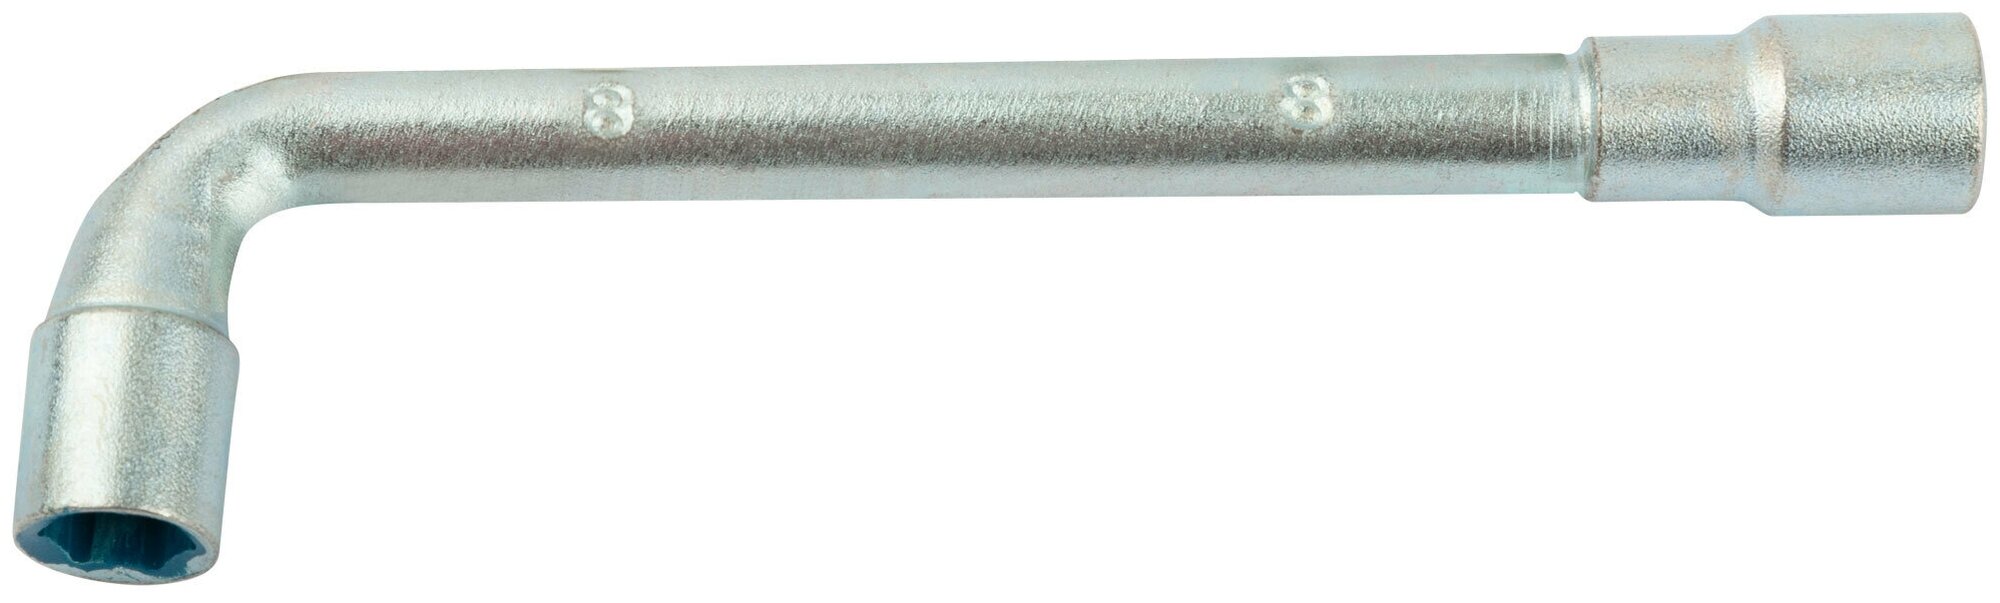 Ключ L-образный 8 мм 63008